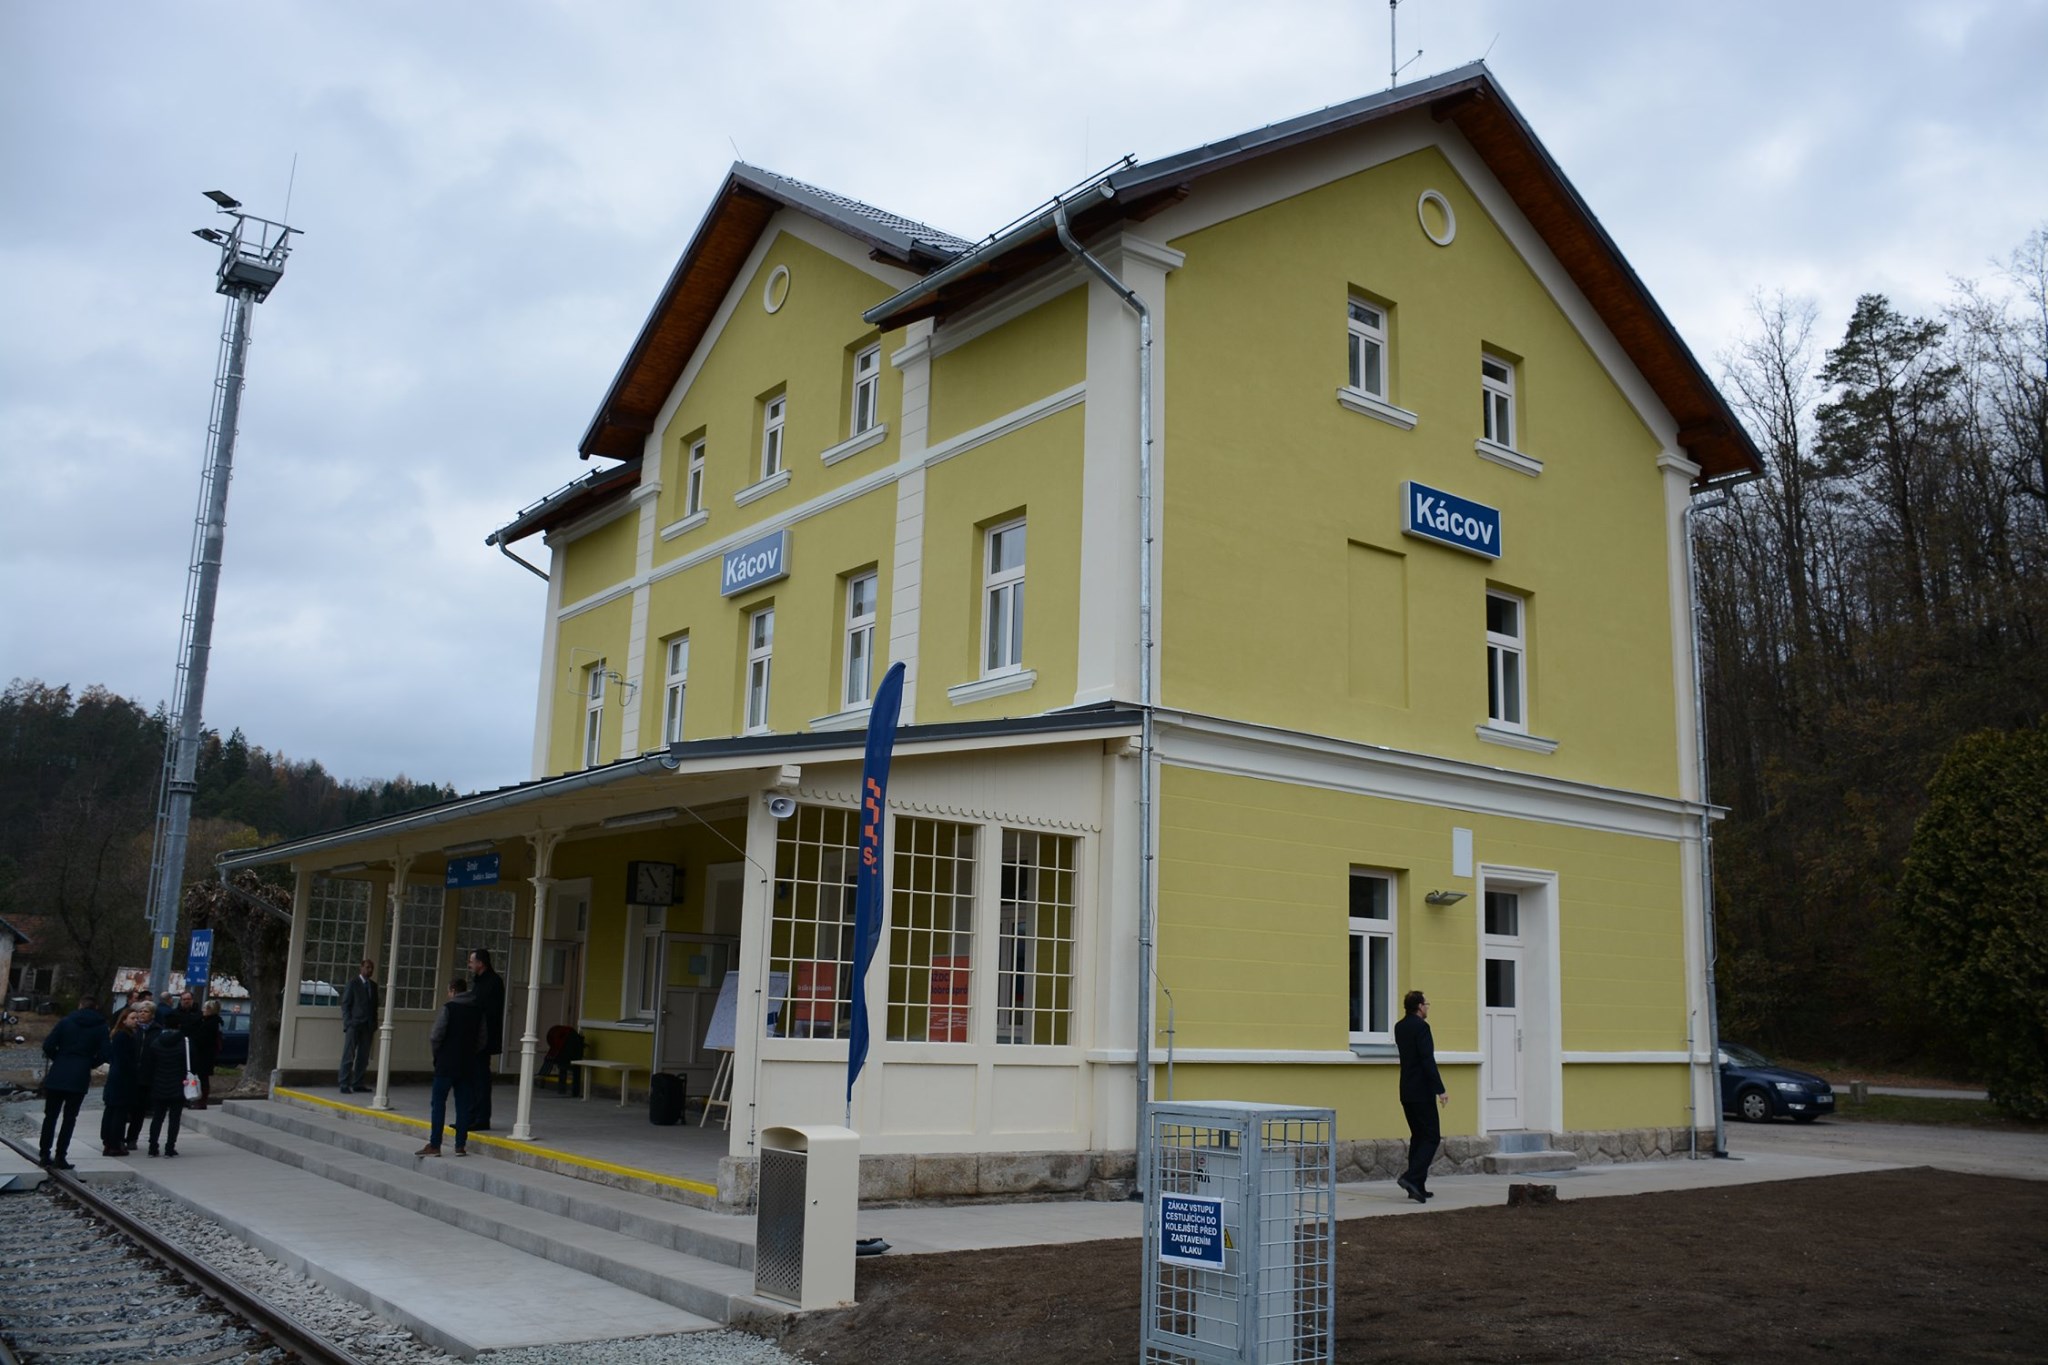 Správa železnic intenzivně rekonstruuje nádražní budovy v celé České republice